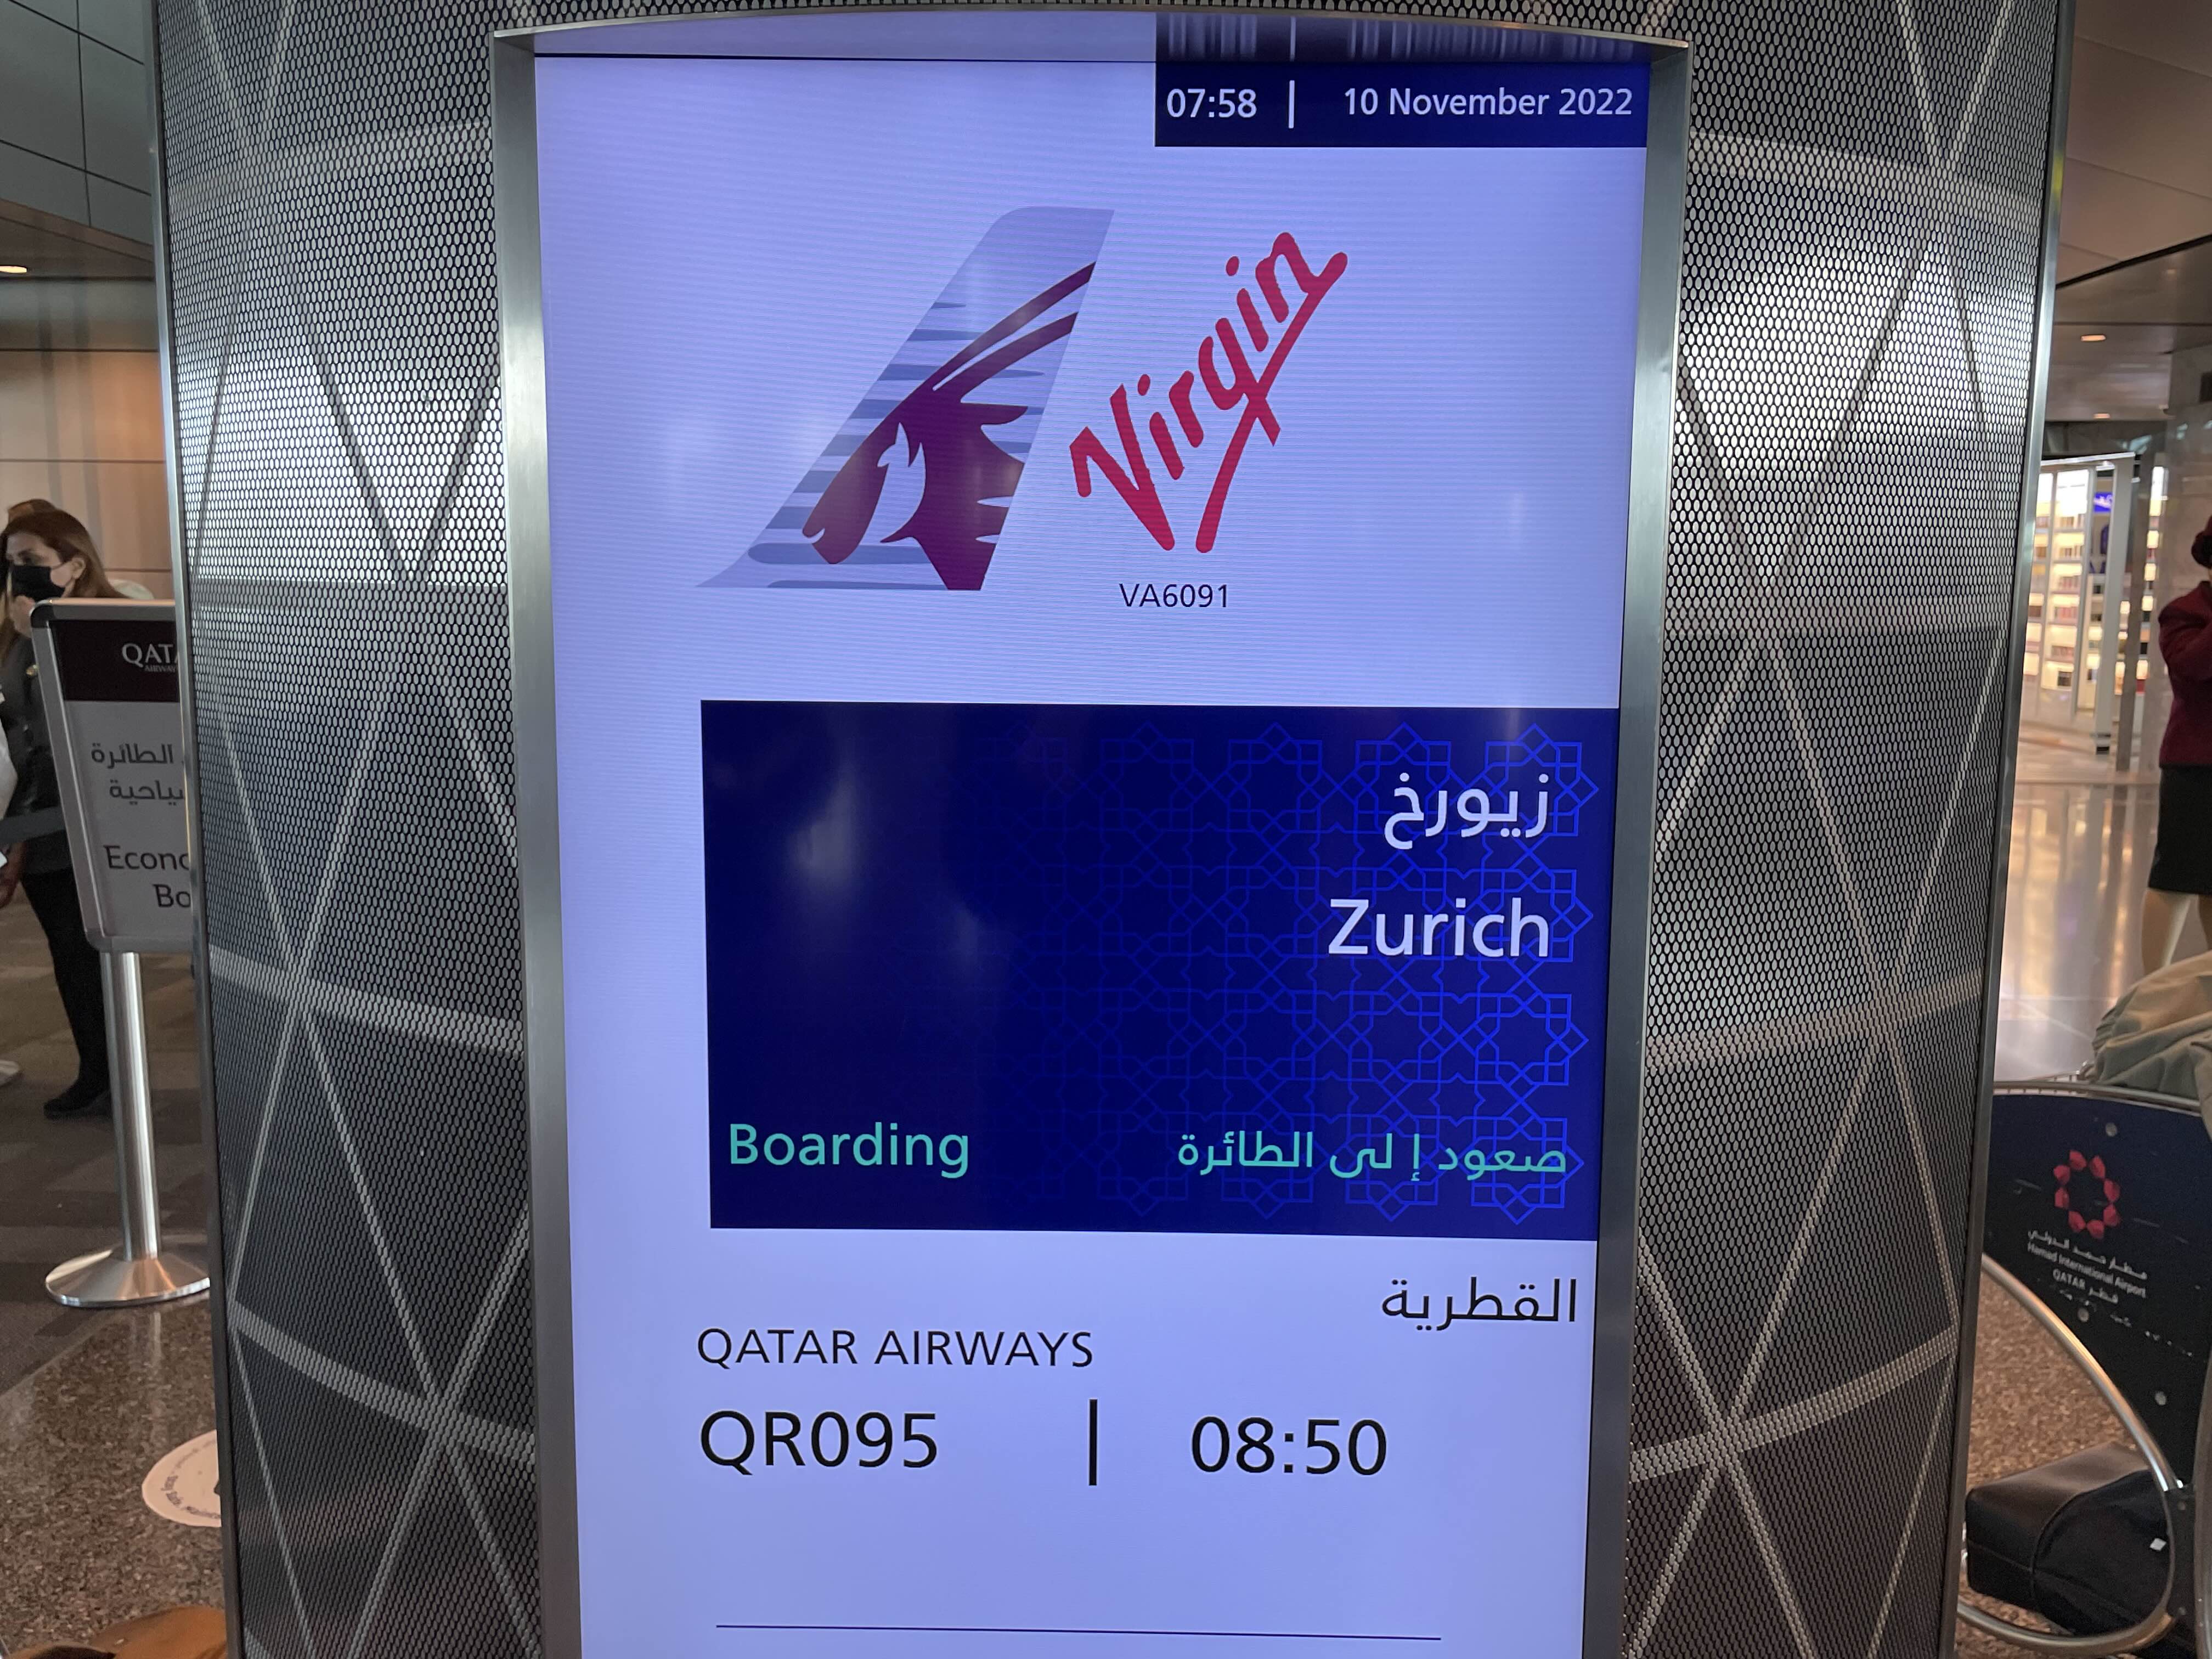 카타르 항공